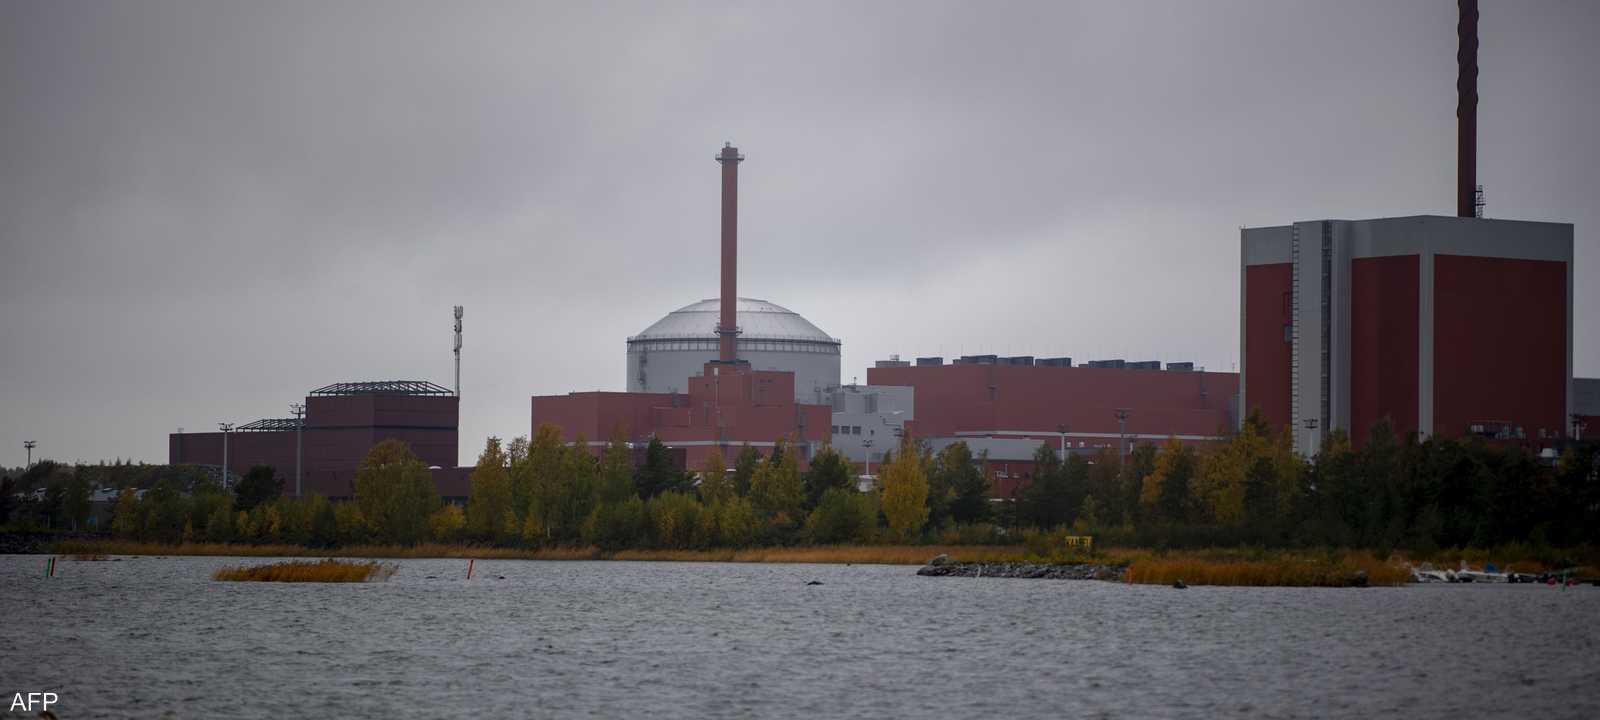 المفاعل النووي المضغوط "إي بي أر" في فنلندا